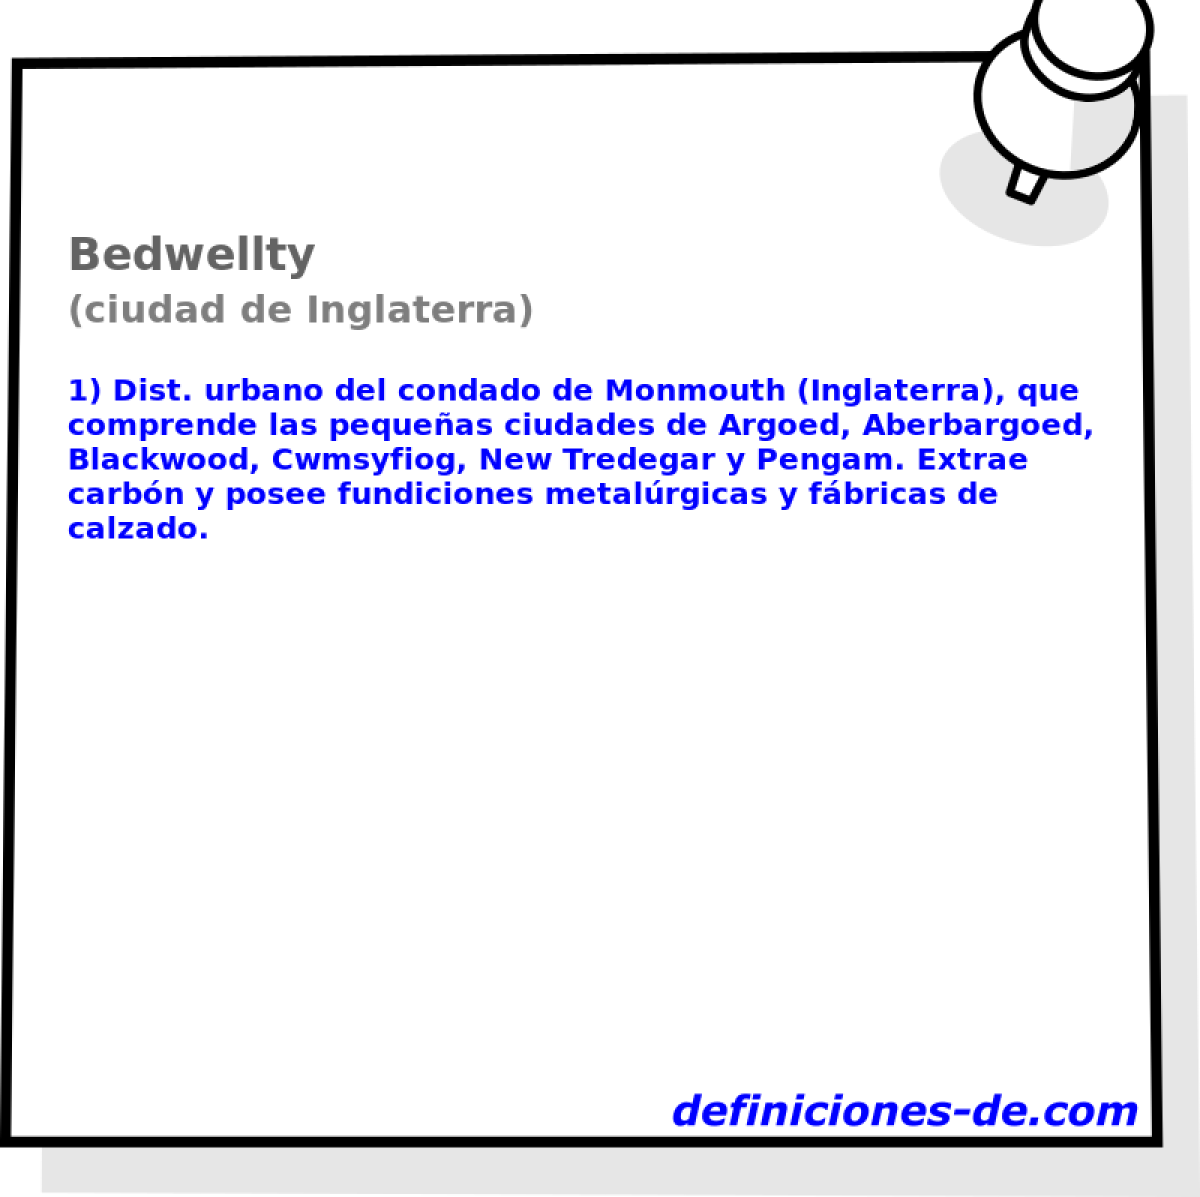 Bedwellty (ciudad de Inglaterra)